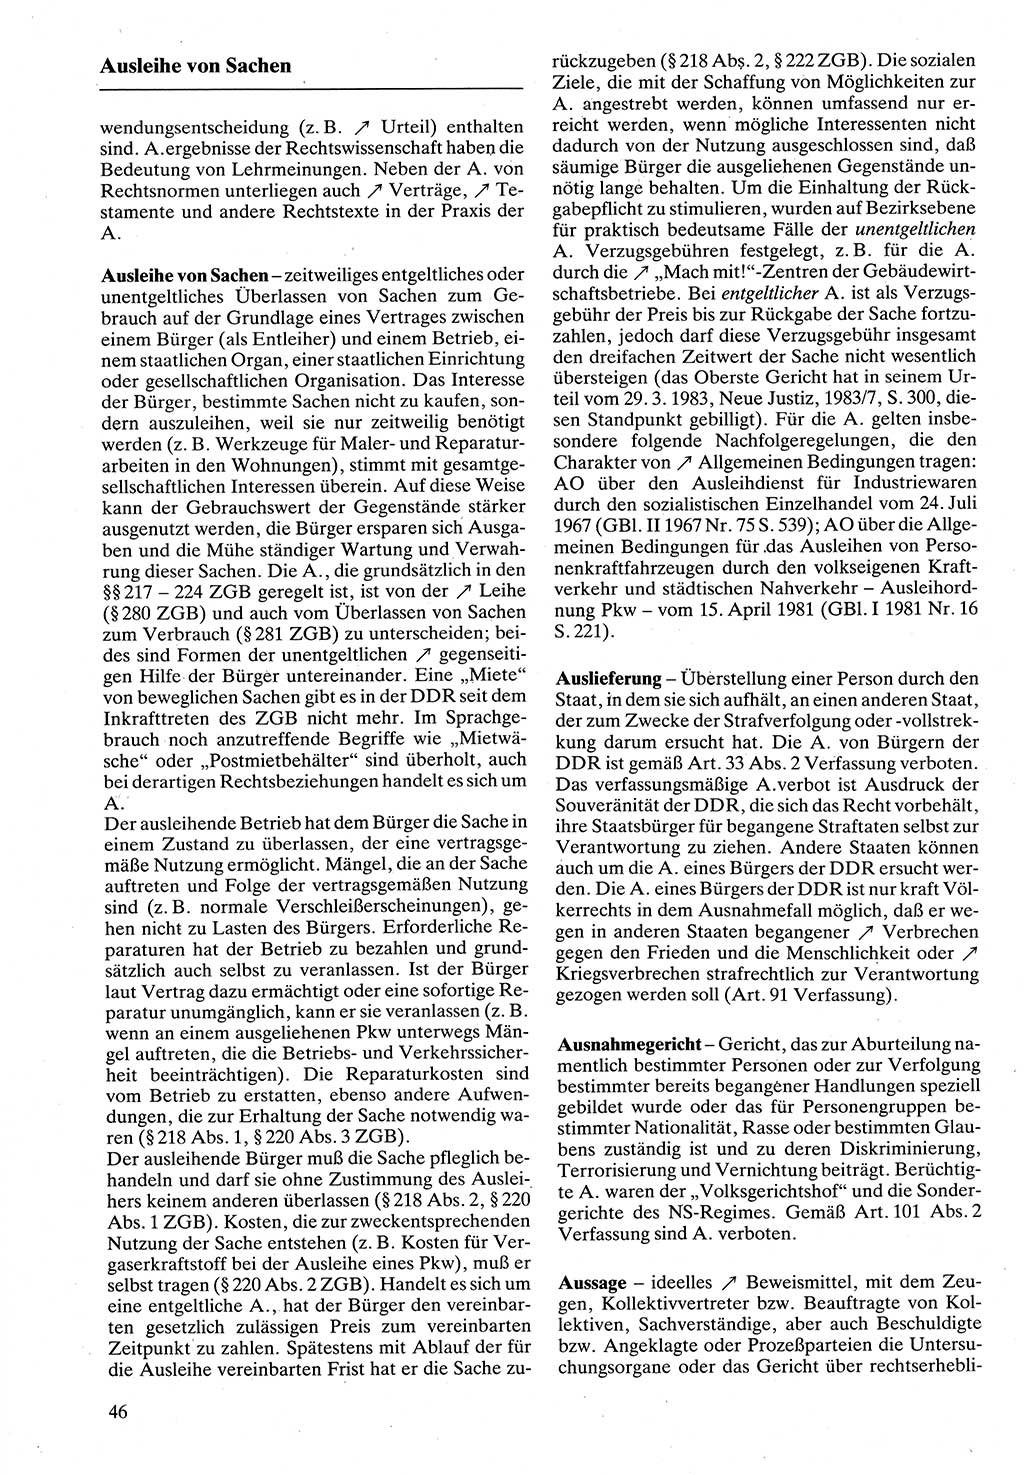 Rechtslexikon [Deutsche Demokratische Republik (DDR)] 1988, Seite 46 (Rechtslex. DDR 1988, S. 46)